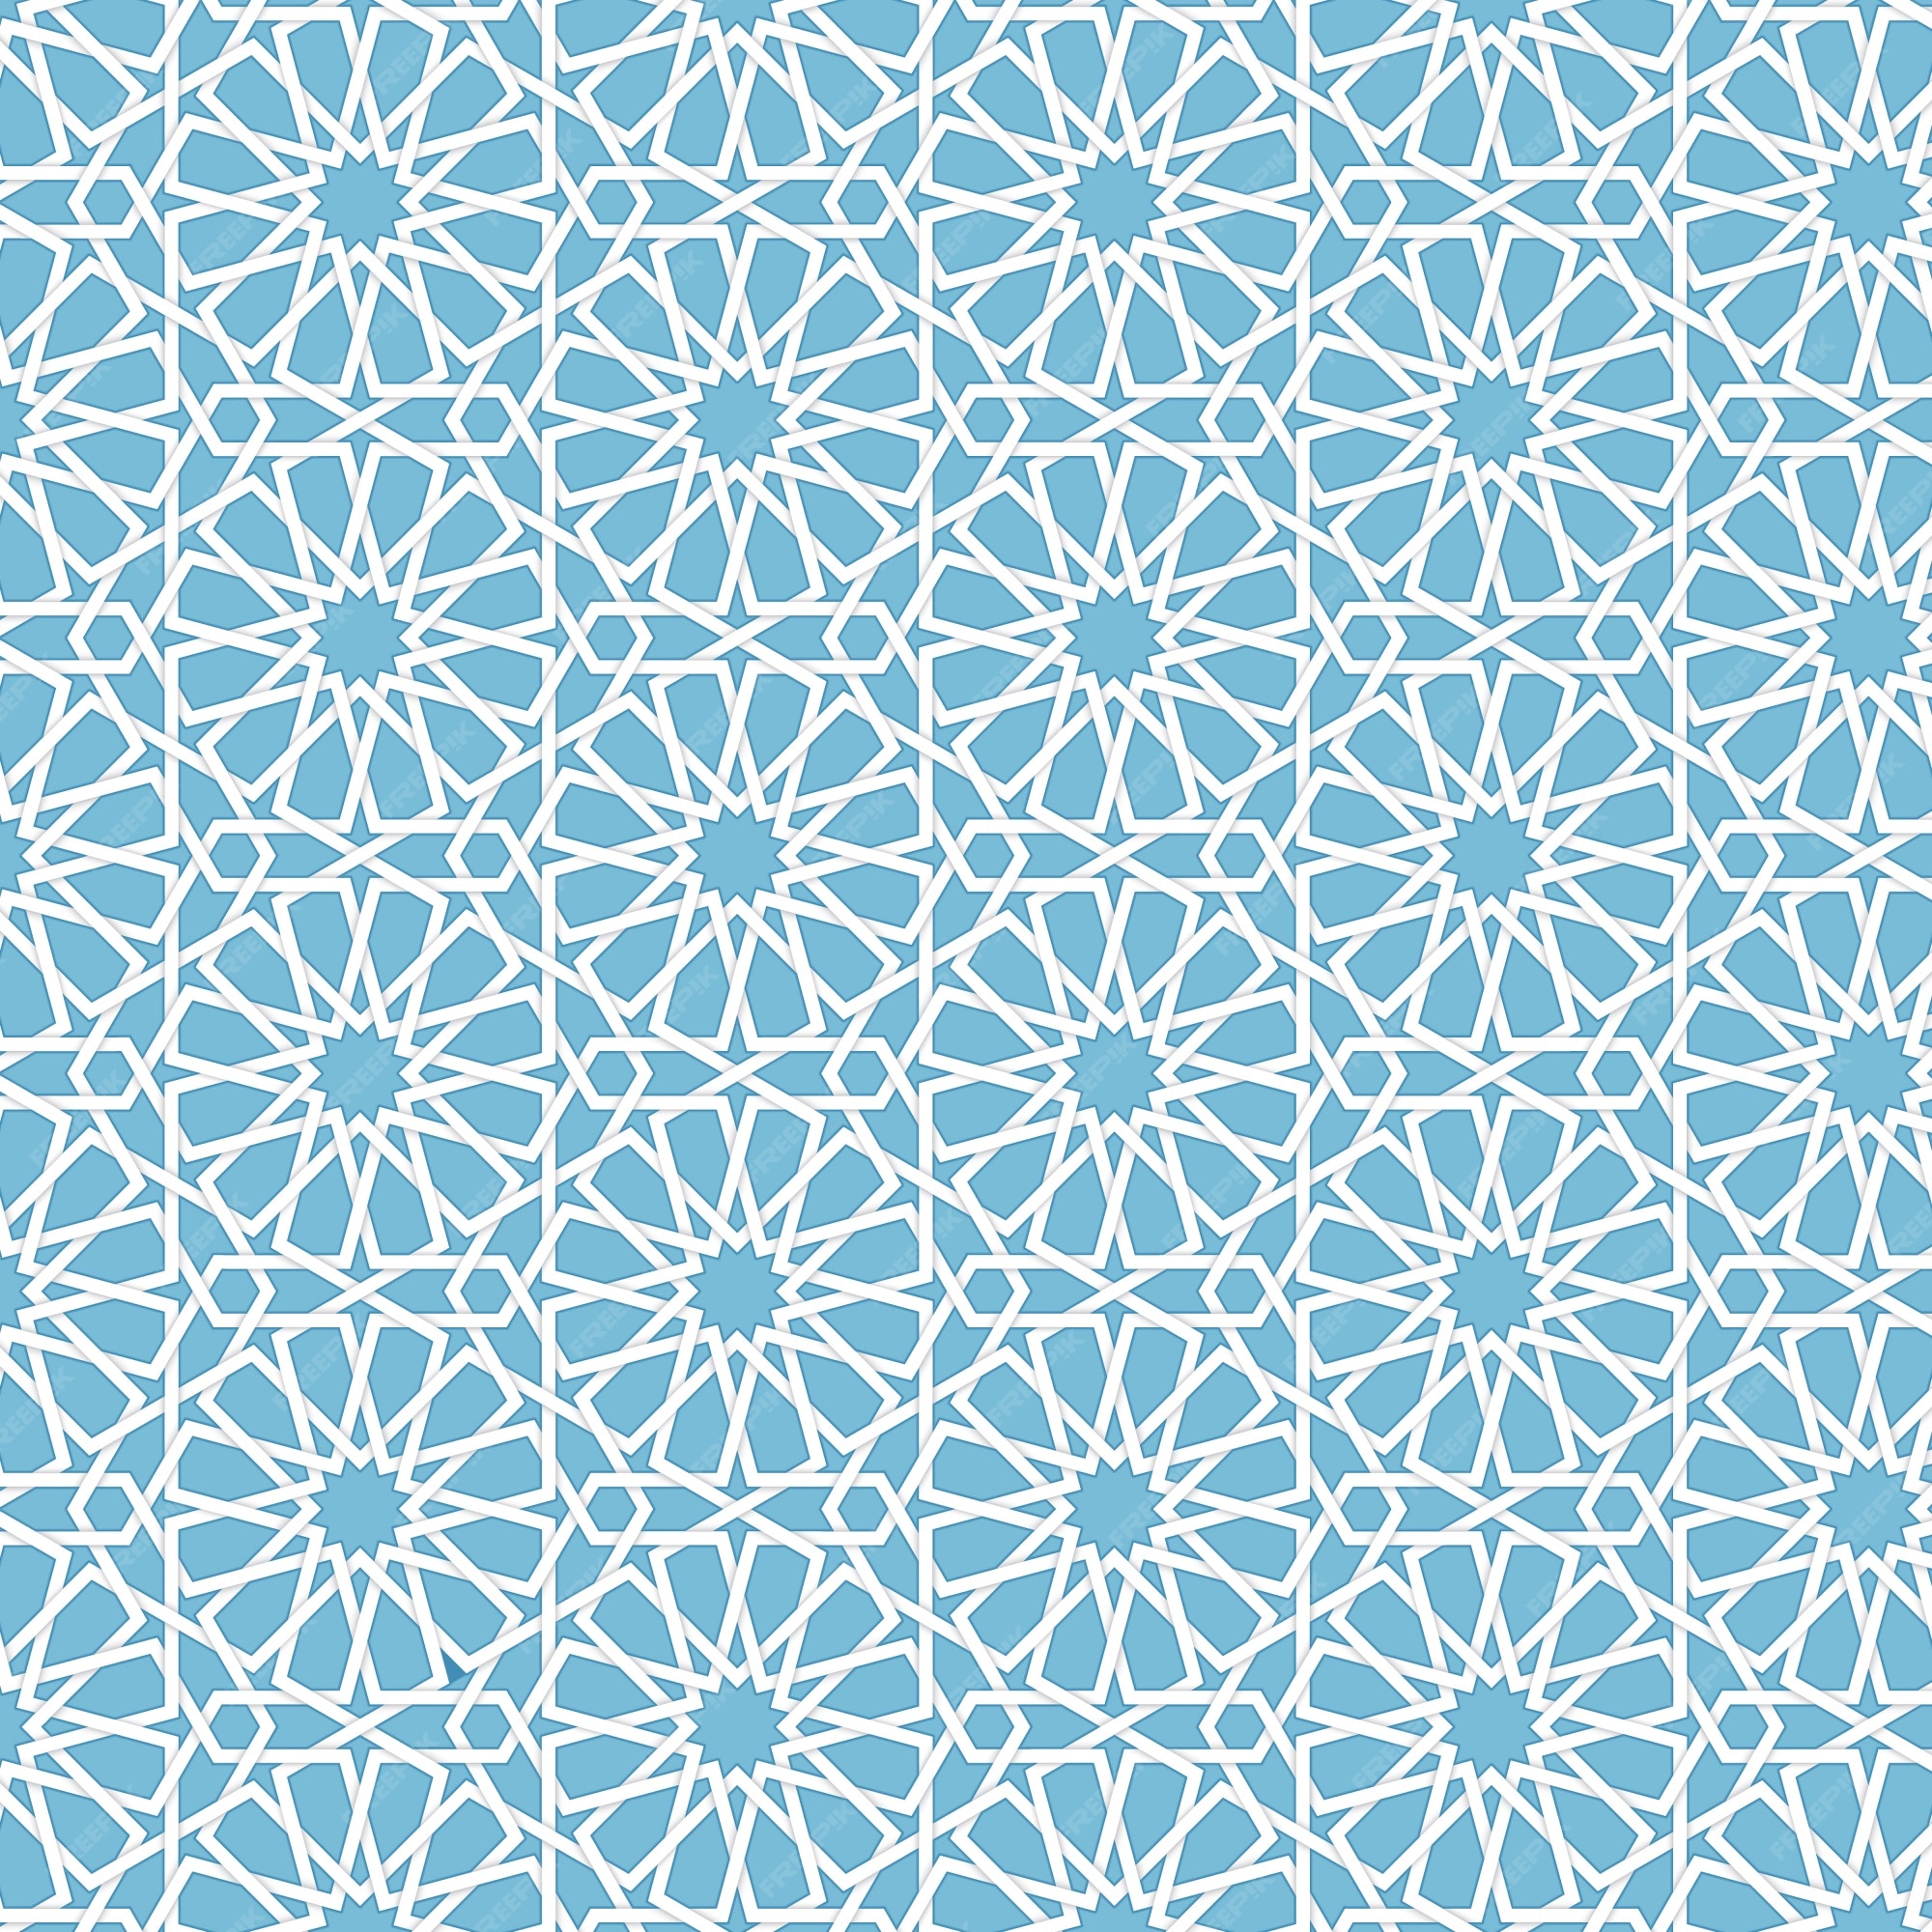 Bộ sưu tập Islamic background vector free đầy sắc màu và đẹp mắt